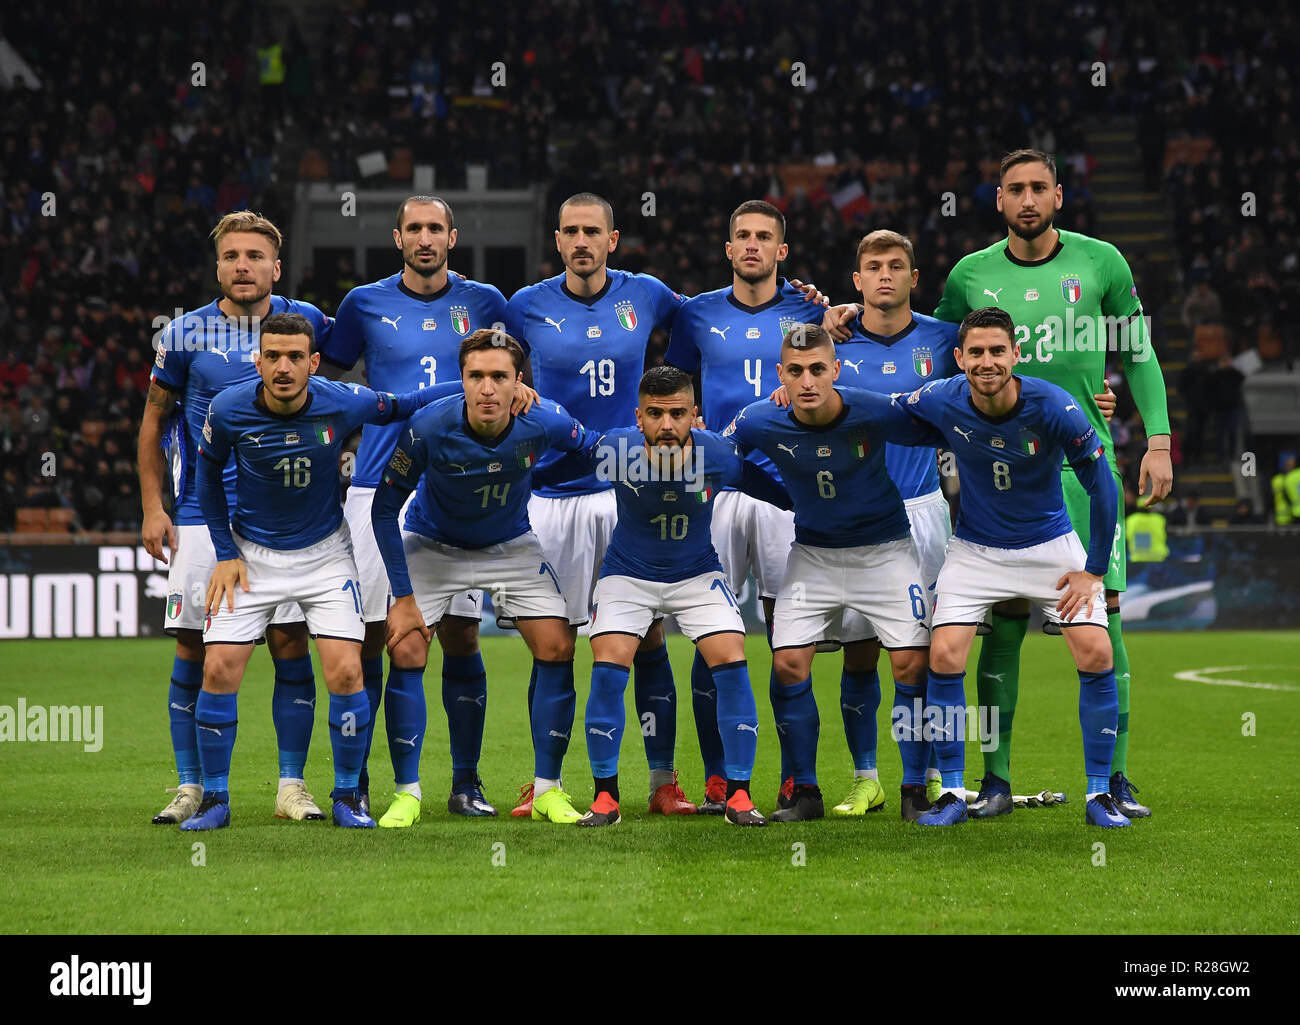 Milan, Italie. 17 novembre, 2018. L'équipe d'Italie de poser pour photo de  l'équipe au cours de l'UEFA Ligue Nations match de foot entre l'Italie et  le Portugal à Milan, Italie, le 17